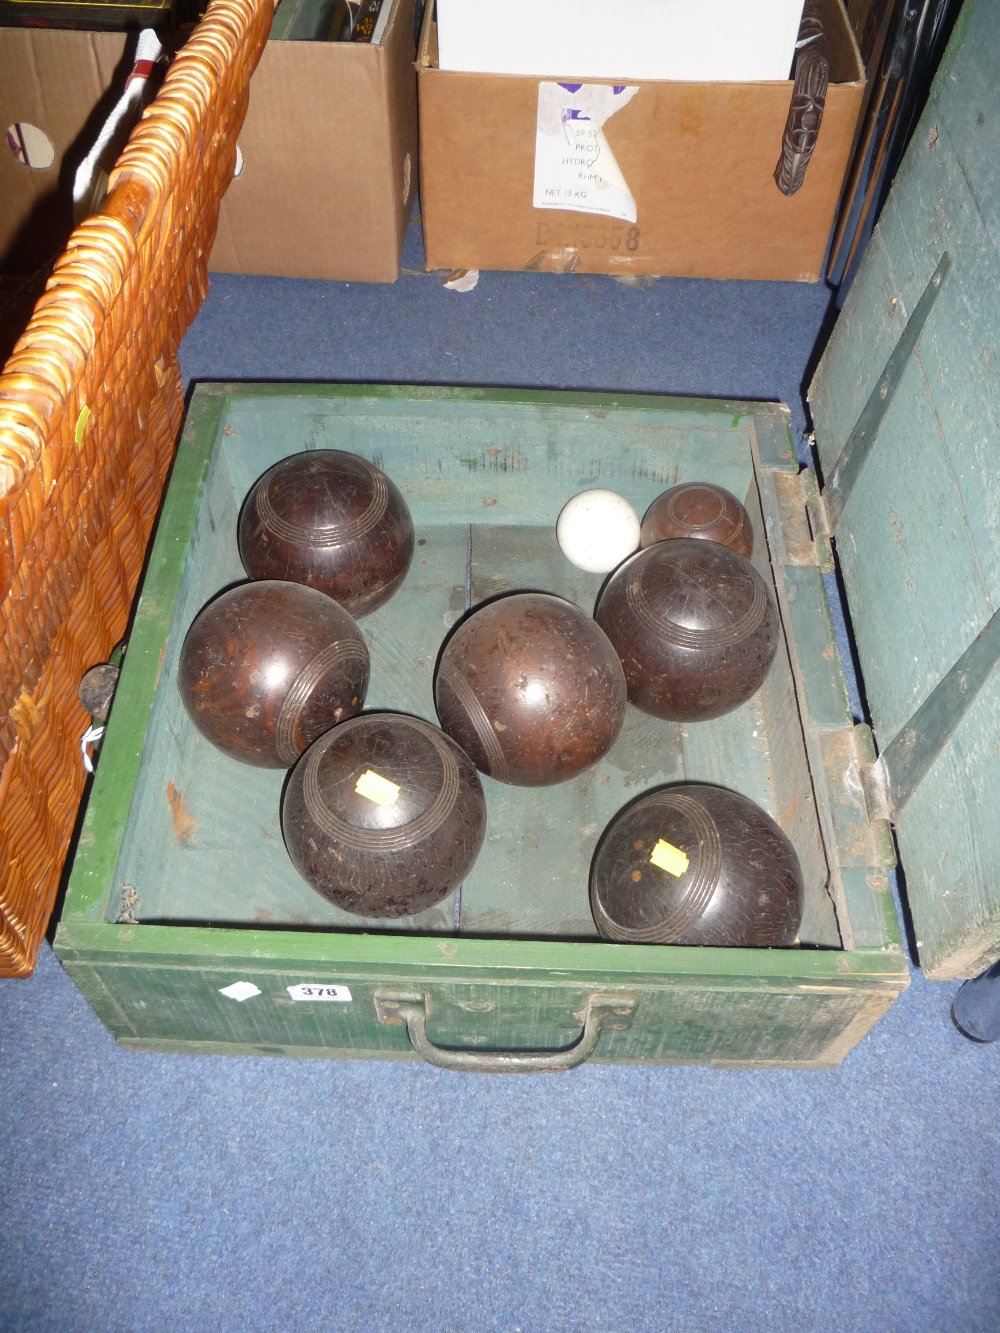 A box of green bowls